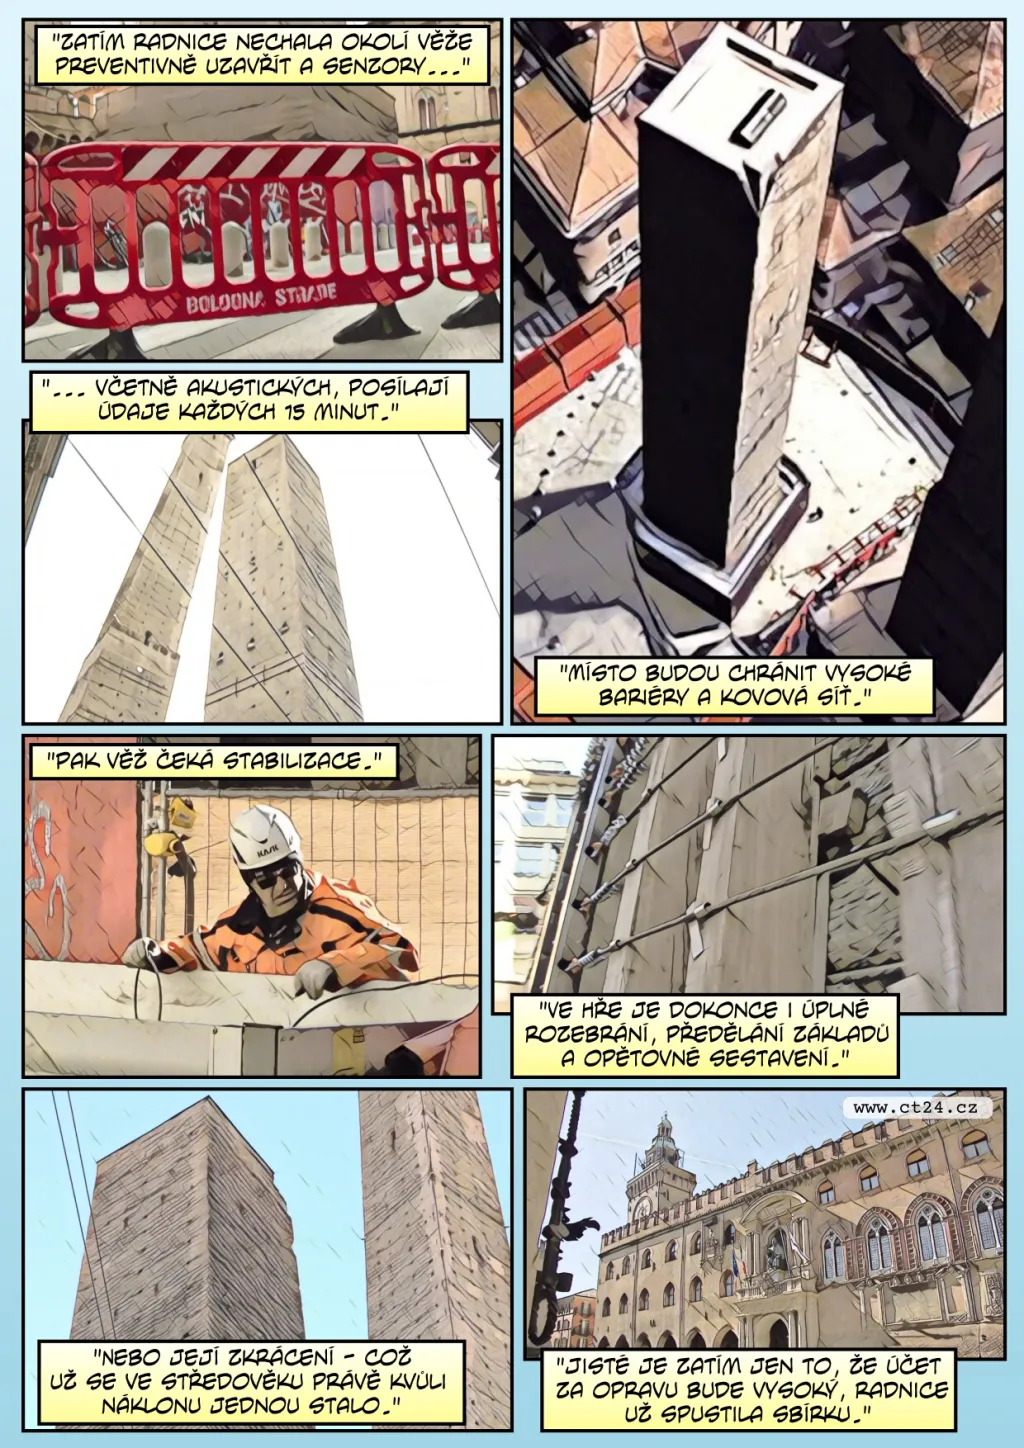 Unikátnost věže v Bologni se stává problémem. Město uzavřelo její okolí